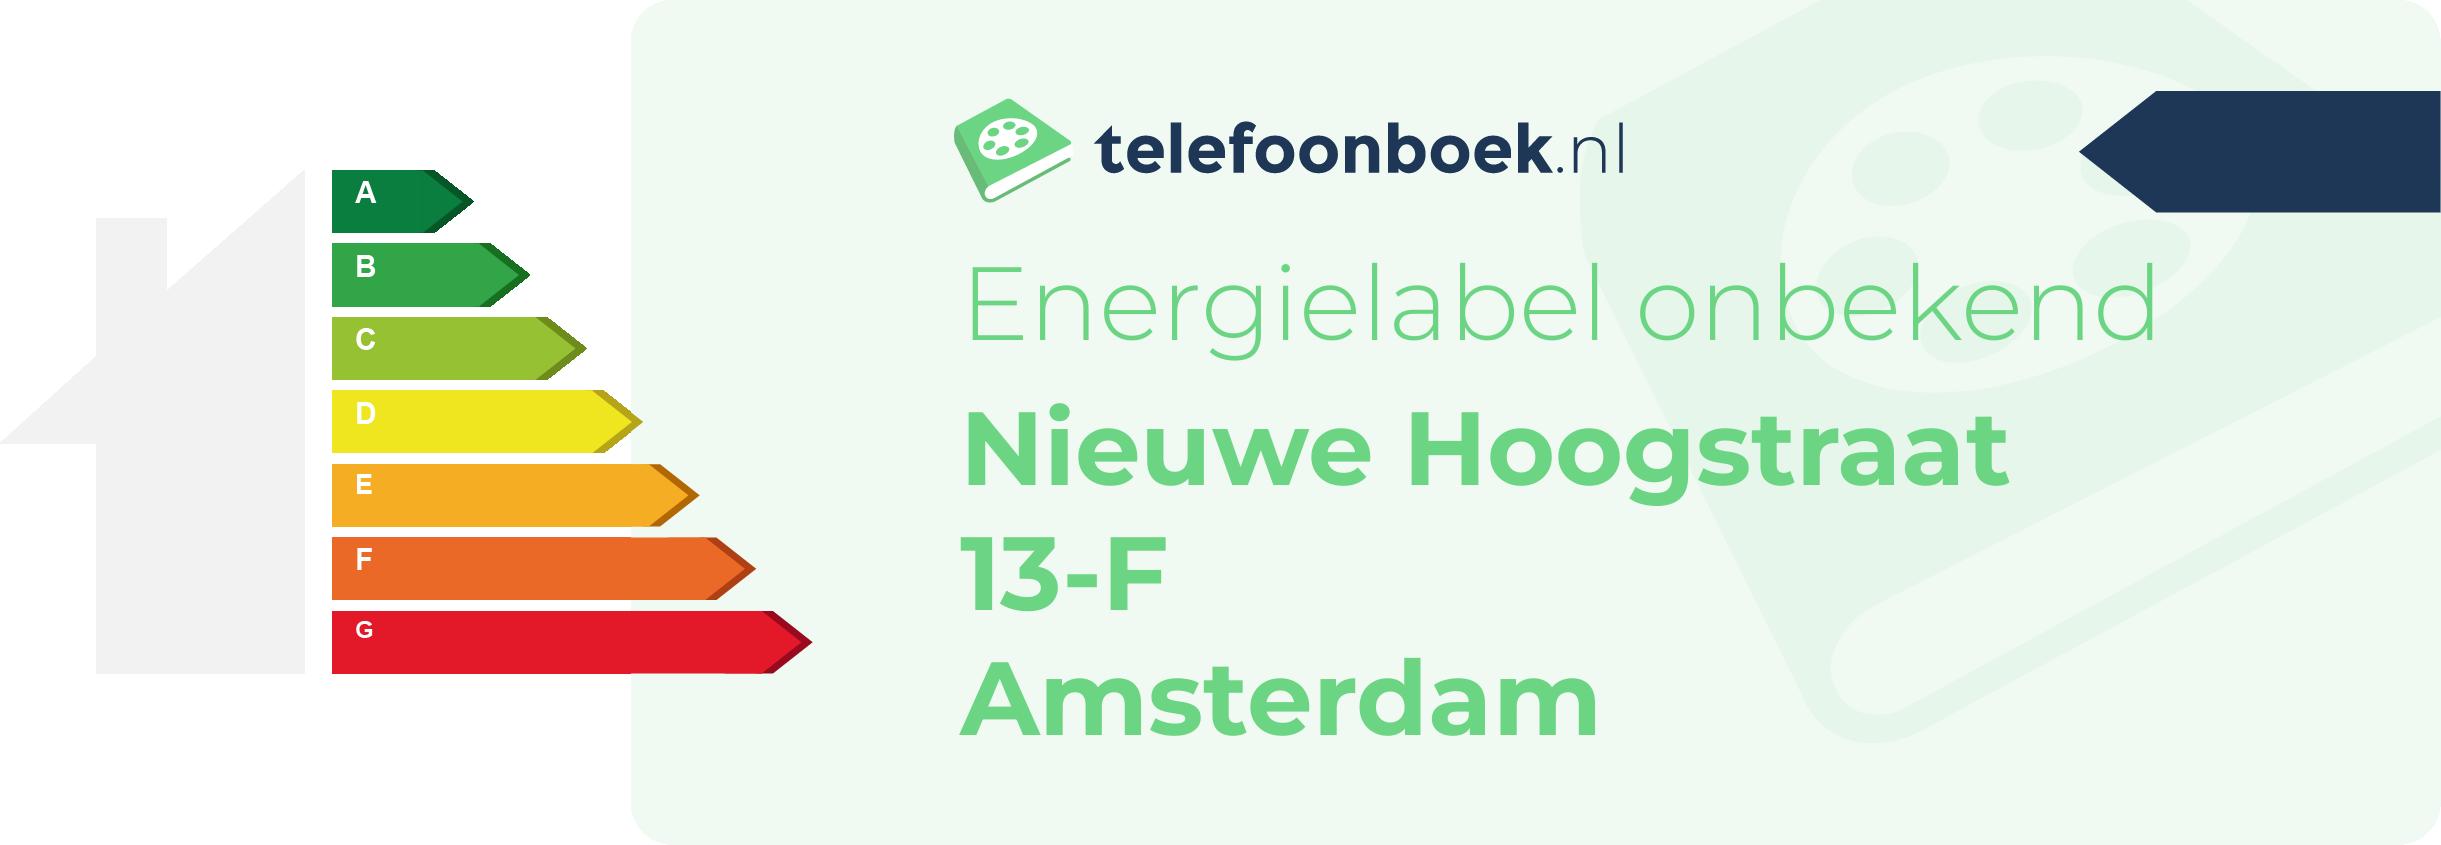 Energielabel Nieuwe Hoogstraat 13-F Amsterdam